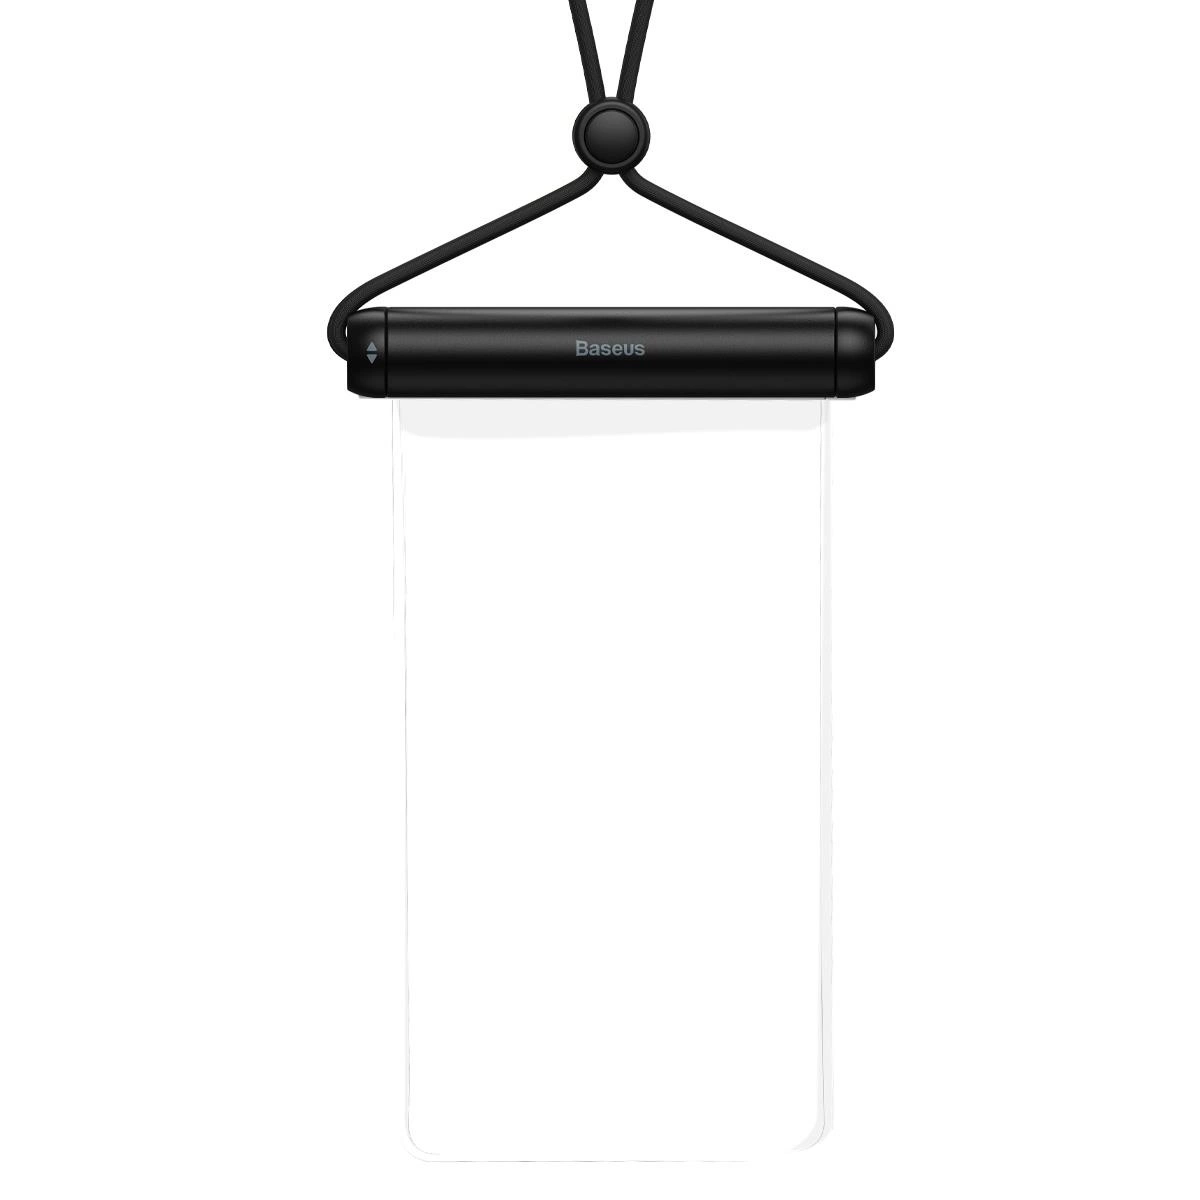 Baseus vodotěsné pouzdro na telefon Slide-cover černé (FMYT000001)